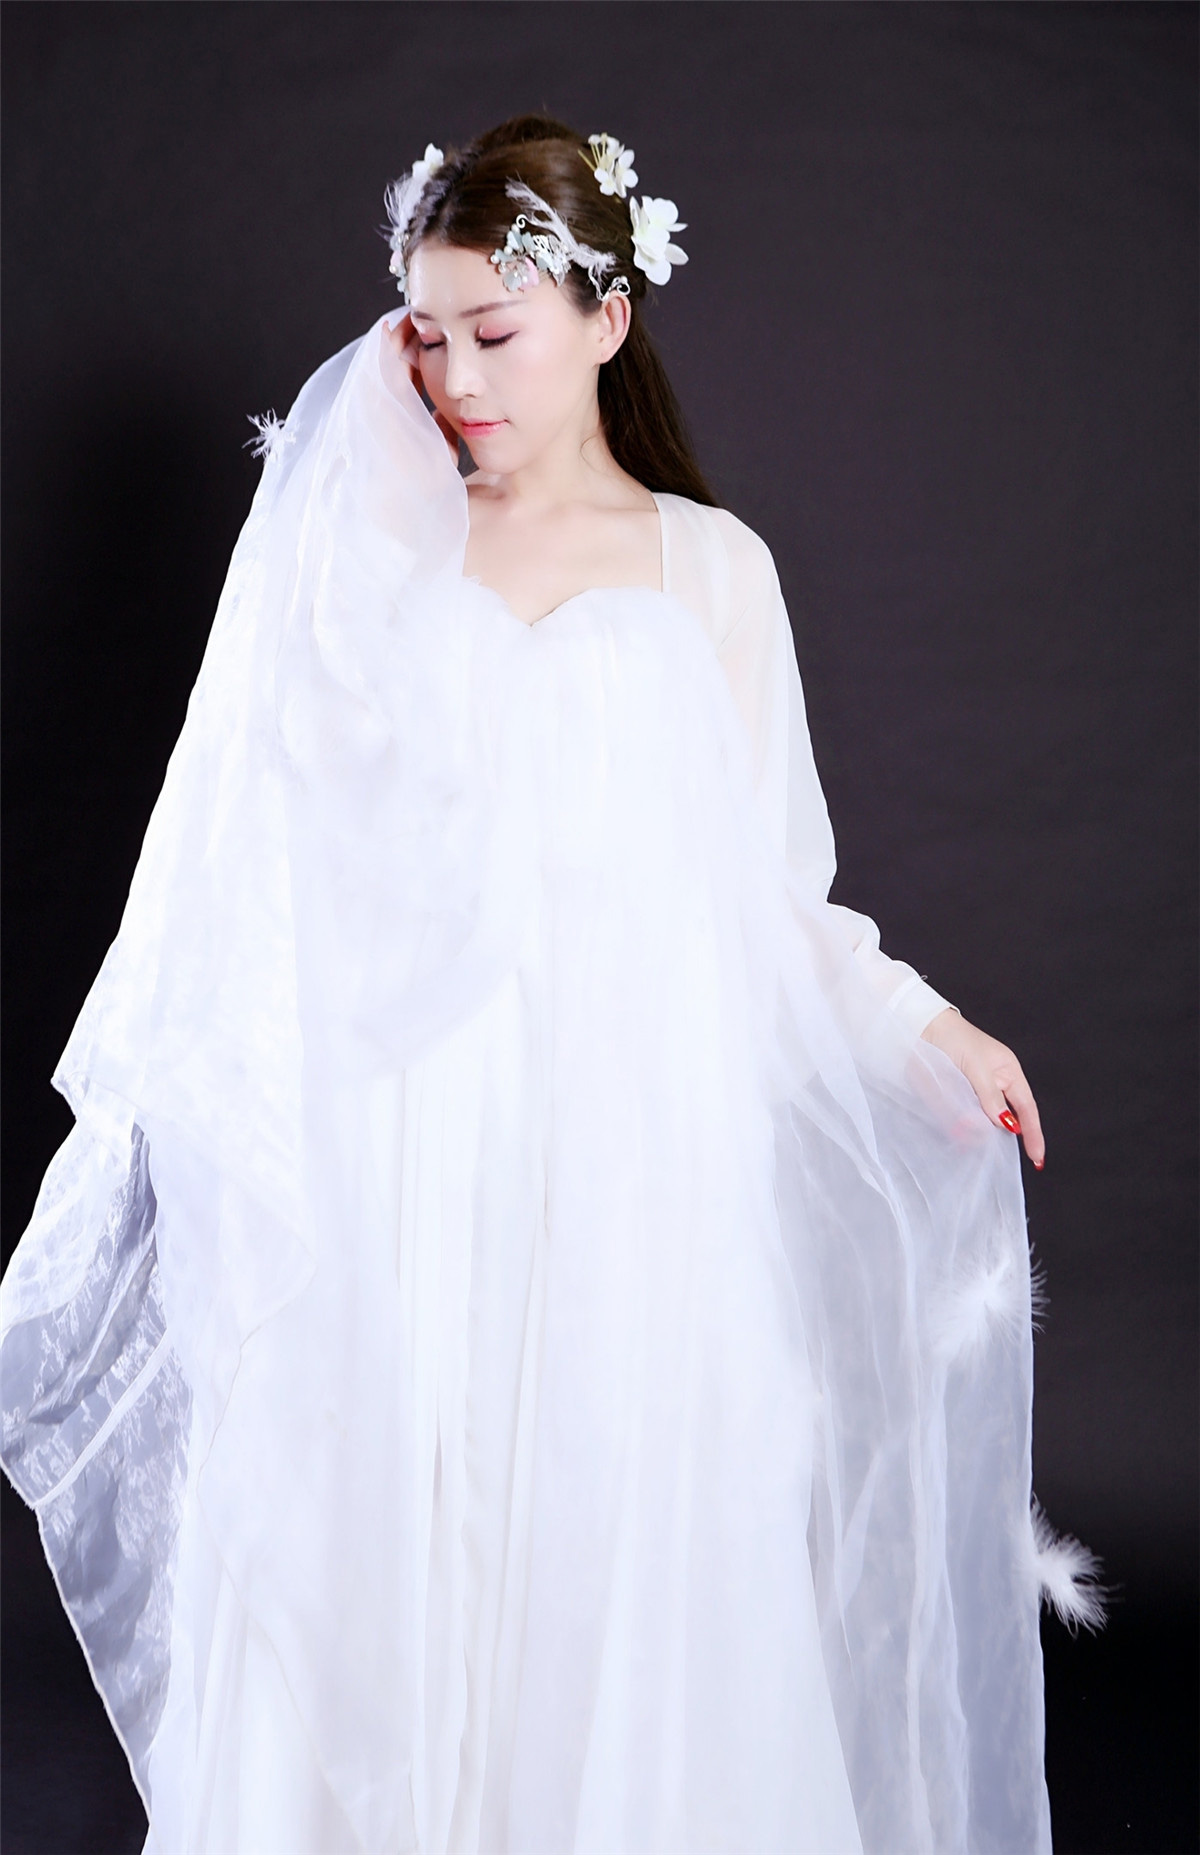 气质美女高端写真 一袭白色长裙彰显优雅魅力